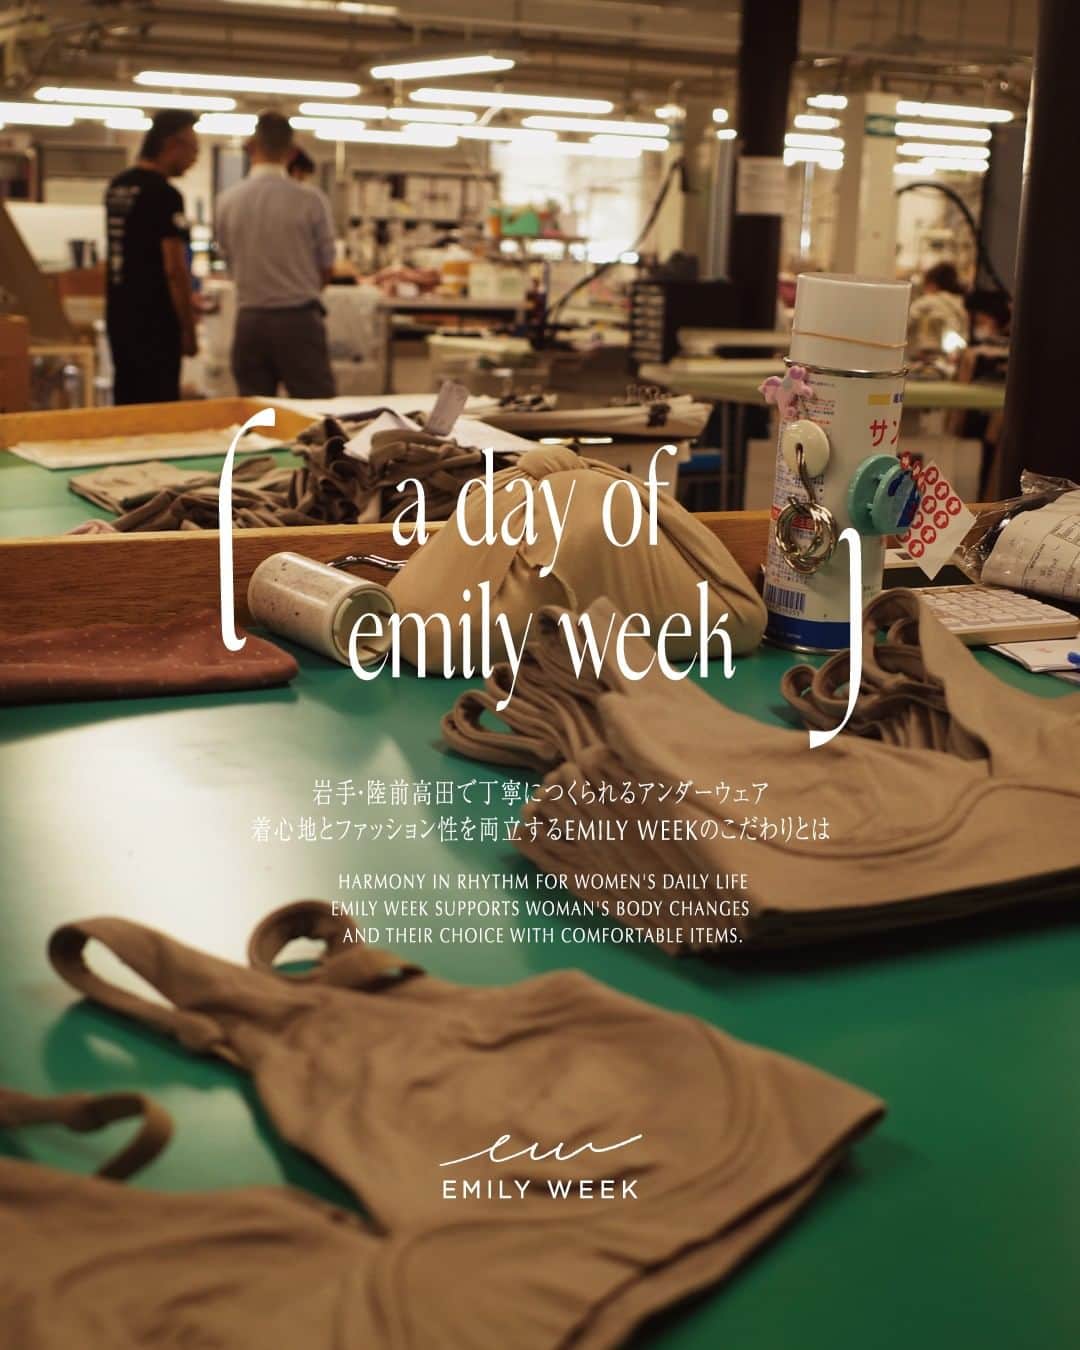 EMILY WEEKのインスタグラム：「#1  𝘢 𝘥𝘢𝘺 𝘰𝘧 𝘦𝘮𝘪𝘭𝘺 𝘸𝘦𝘦𝘬   ___  EMILY WEEKの視点からさまざまなコンテンツを深掘りする「a day of emily week」。   第一回目はEMILY WEEKの縫製をお願いしている岩手県・陸前高田にある縫製工場へ訪問。   高い技術でひとつひとつ丁寧につくられているEMILY WEEKのものづくりの背景をお伝え。     ーEMILY WEEKならではのアンダーウェアに対するこだわり 「着心地の良さとファッション性の両立を追求しているEMILY WEEKの下着は 生産部分でもこだわりや要望がとっても多いんです。普通であれば、効率を優先して請け負わないような仕様でも、ここシェリール工場では本当に細やかに対応してくれ、EMILY WEEKのアイテムがみなさんの元に届けられています。」     ー下着をつくるということ 「縫製の工程を見学させていただいて感じたことは、こんなに作るのに時間や手間がかかっているのに下着の相場って安くない…？ということ。 こだわって労力をかけてつくったものに対して、適切な価格を支払ってほしいという気持ちは普段自分も仕事をしていて本当に感じる部分です。」      記事の続きはInstagramリンクページまたはストーリーズハイライトよりご覧いただけます。    #A_DAY_OF_EMILYWEEK    ___    前田 沙綾香（まえだ さやか） ￣￣￣￣￣￣￣￣￣￣￣￣￣ アートディレクター / デザイナー  普段はさまざまなブランドやショップ等のデザイン、ビジュアルディレクションをおこなっている。 EMILY WEEK 23𝘈/𝘞 𝘊𝘰𝘭𝘭𝘦𝘤𝘵𝘪𝘰𝘯 のシーズンビジュアルも手がけている。  Instagram： @sayakamaeda__    -     #EMILYWEEK #エミリーウィーク　 #日常を心地よいリズムに」